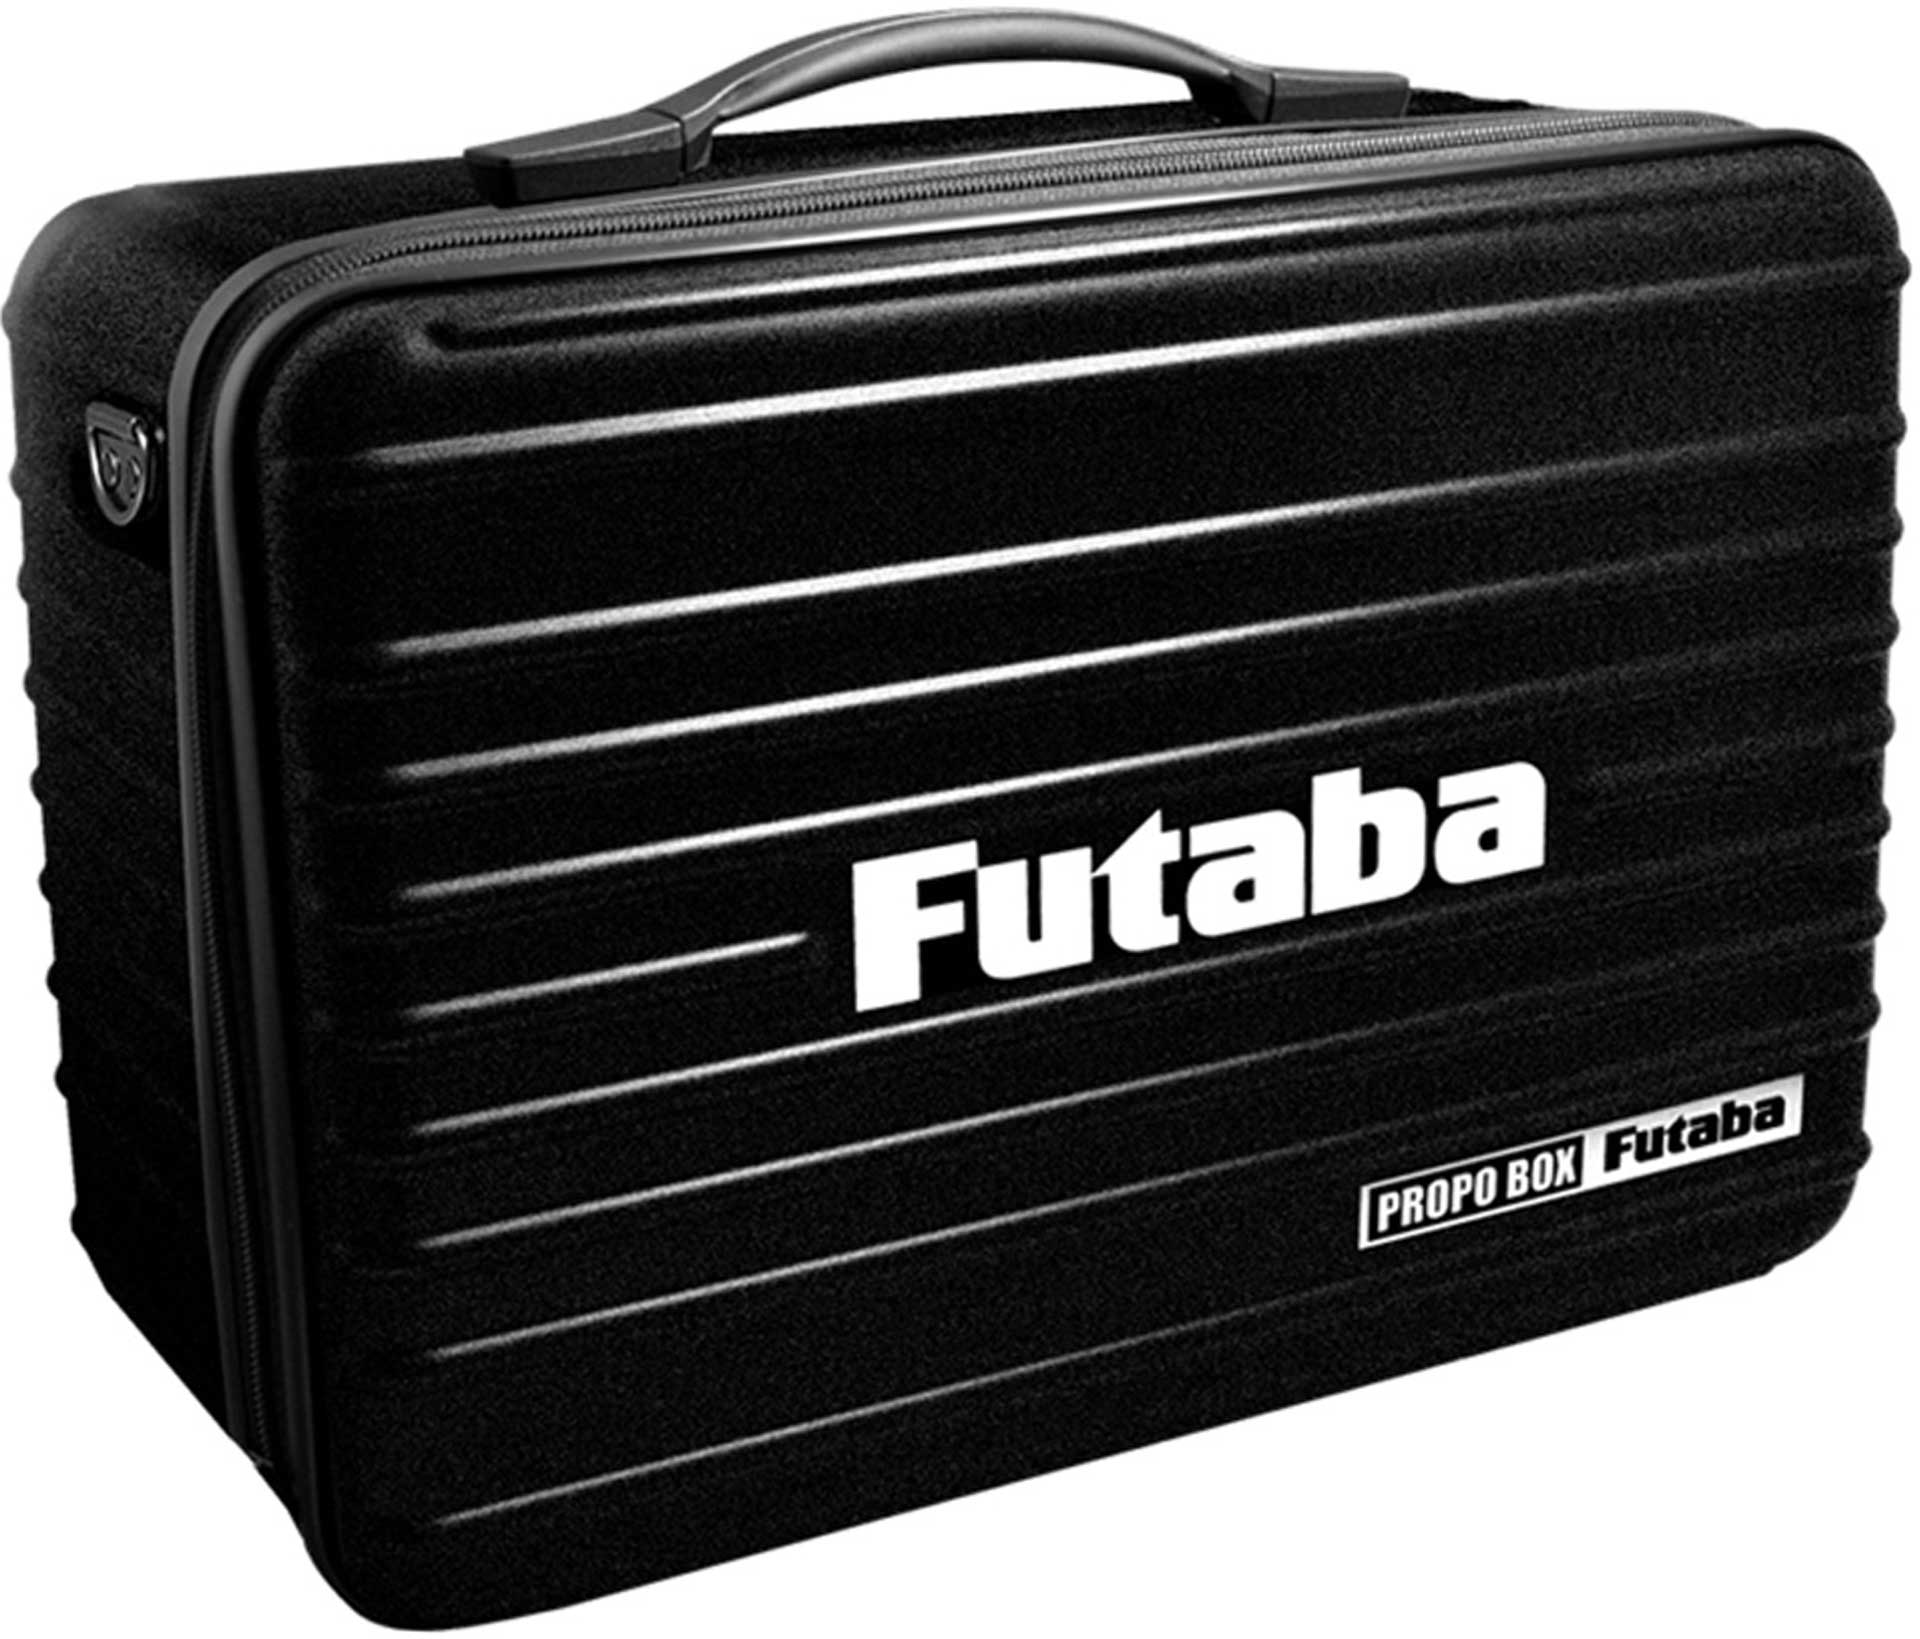 FUTABA Senderkoffer für alle Sender mit Reissverschluss